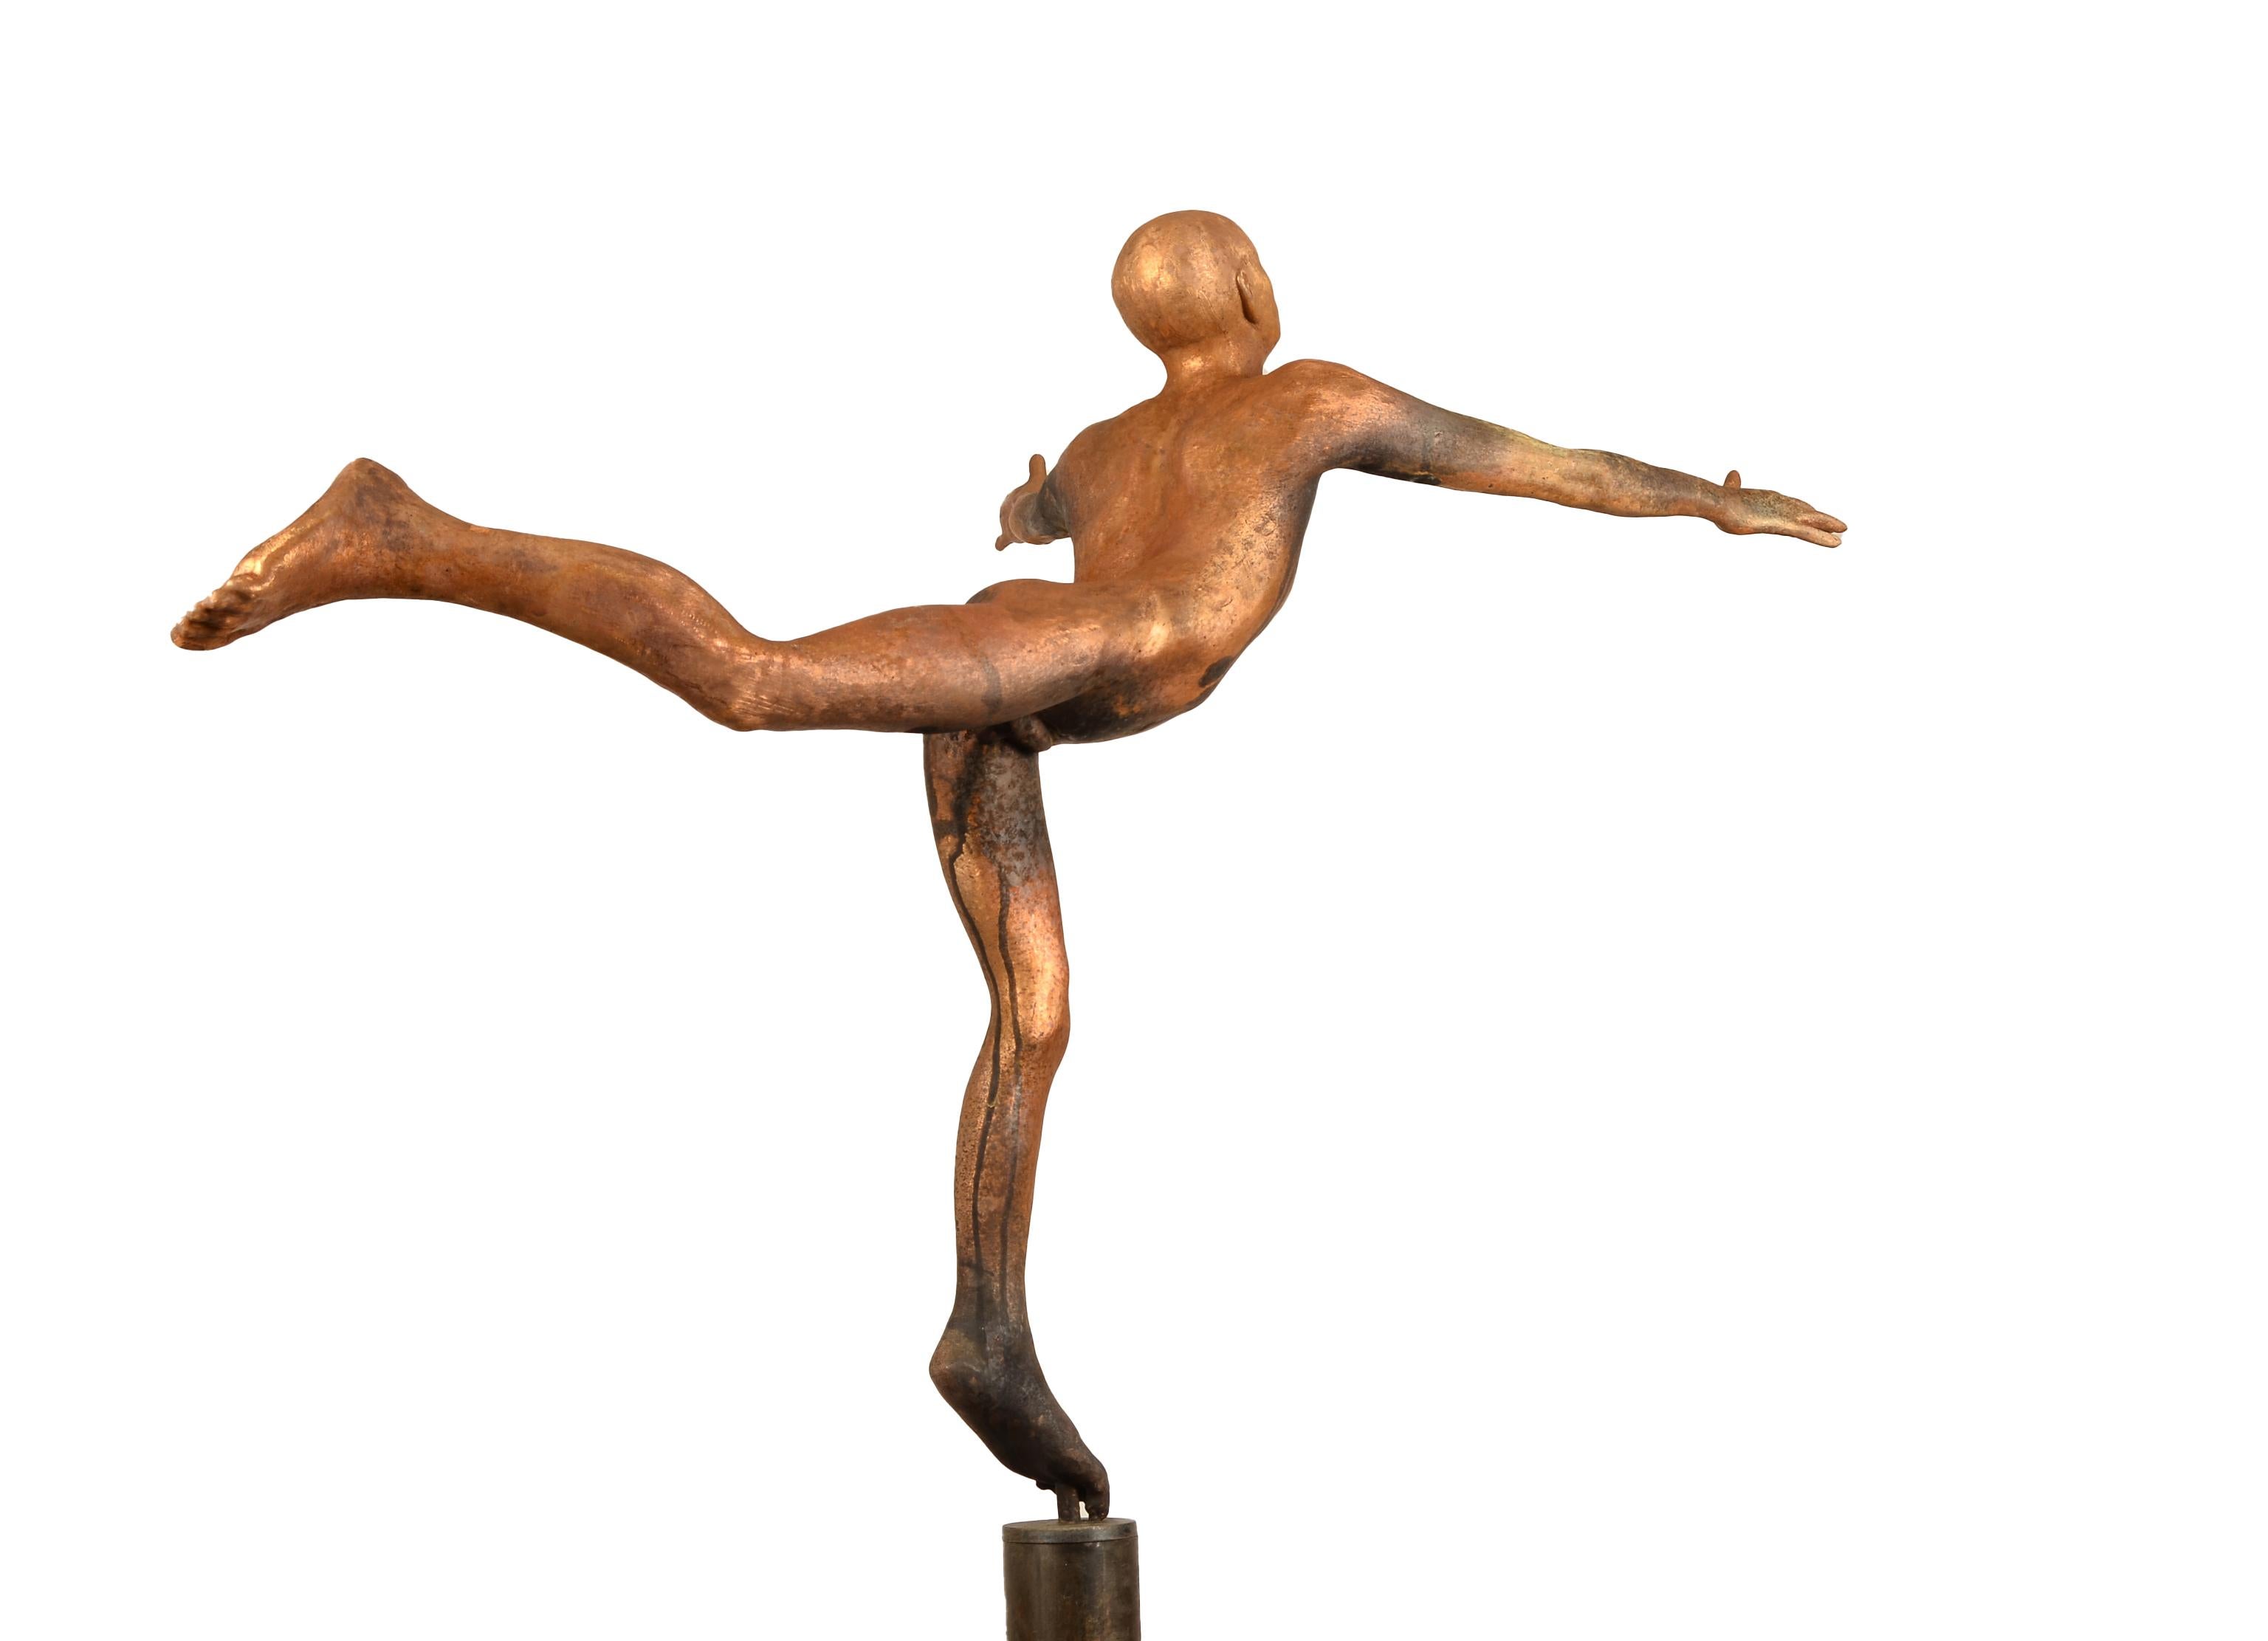 Cefiro - Sculpture en bronze d'un acrobate, inspirée de la Renaissance, sur un grand Stand - Or Abstract Sculpture par Jesus Curia Perez